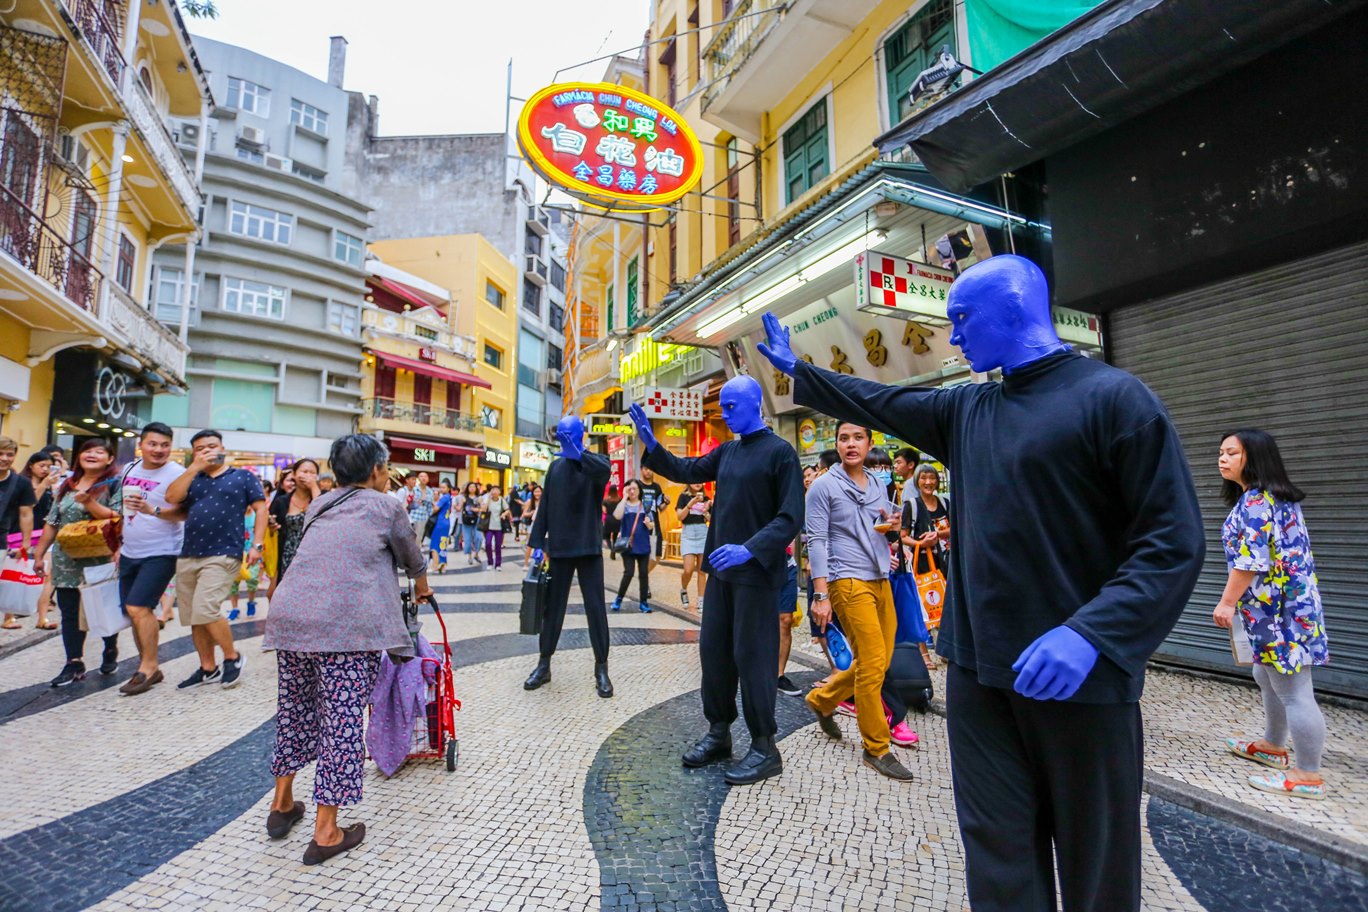 蓝神在街上与人互动